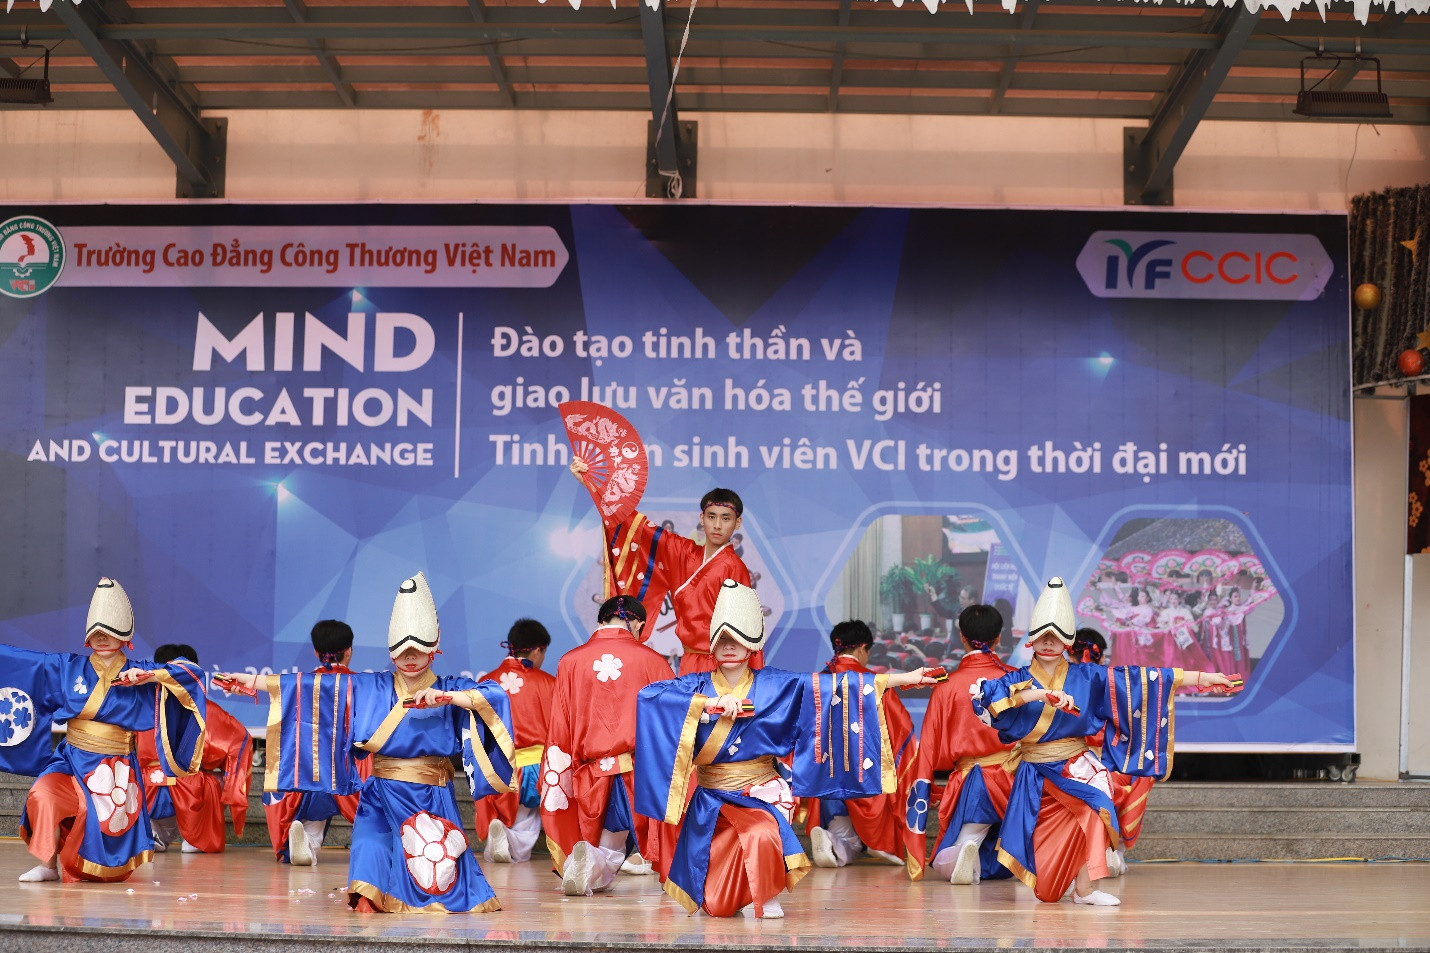 Trường Cao đẳng Công thương Việt Nam: Tổ chức thành công chương trình giao lưu văn hóa quốc tế và giáo dục tinh thần cho sinh viên